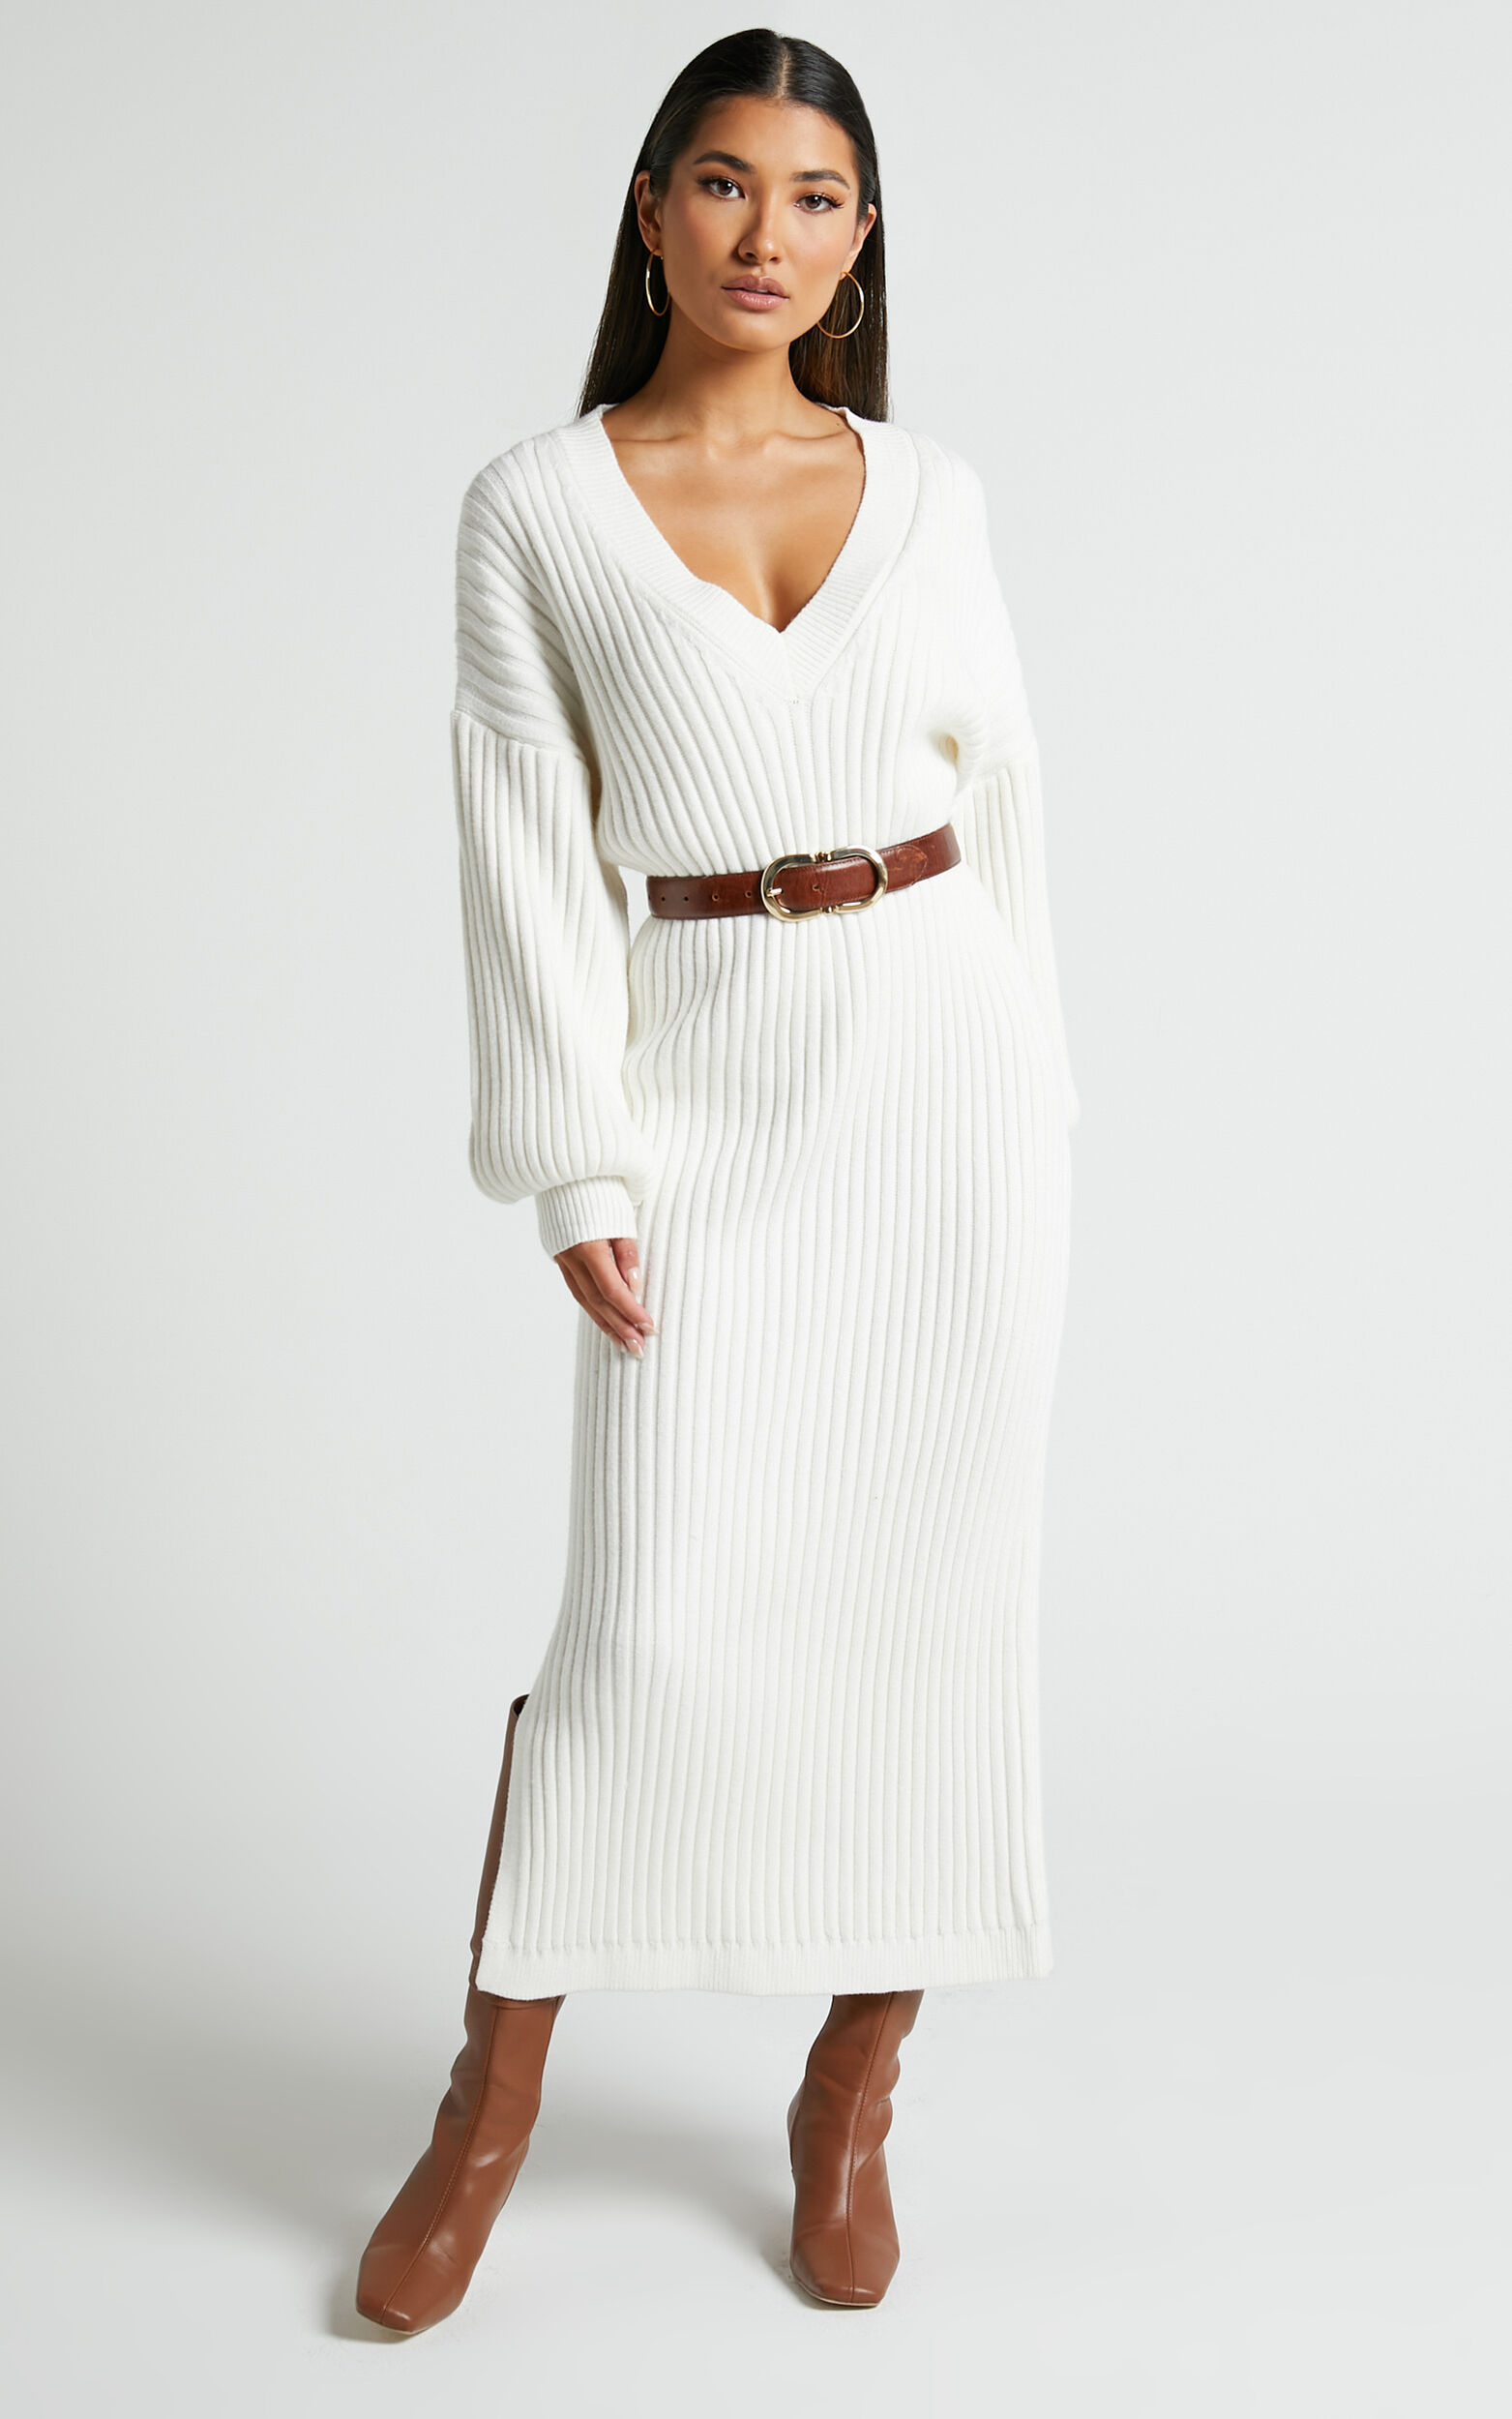 Kartia Midi Dress - V Neck Knit Dress in Off White | Showpo USA